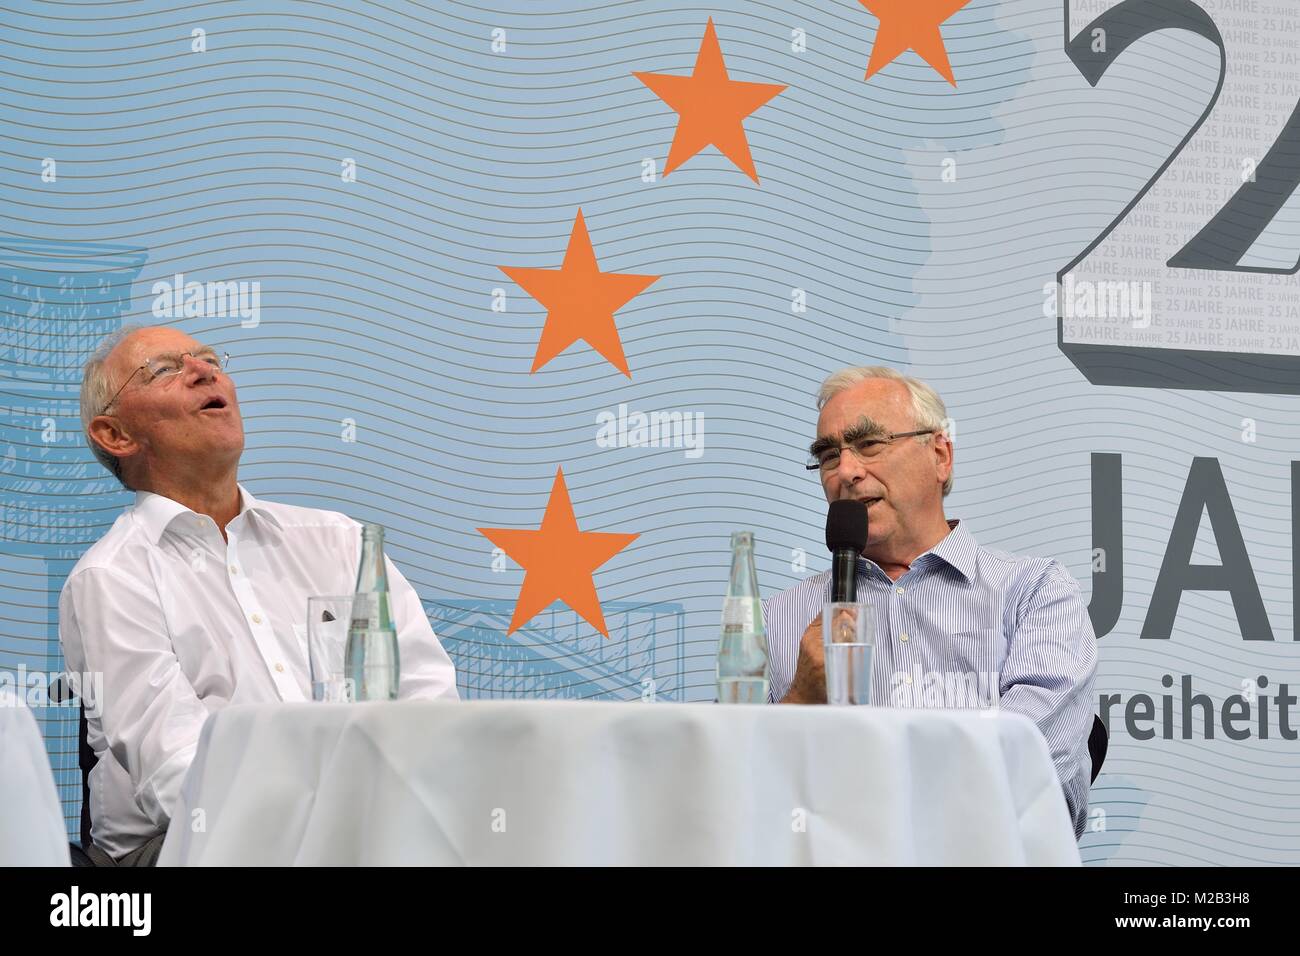 25 Jahre Freiheit und Einheit - Dr. Schäuble im Gespräch mit Dr. Theodor Waigel und Dr. Günther Krause zur Wende in Deutschland beim Tag der offenen Tür 2015. Stock Photo